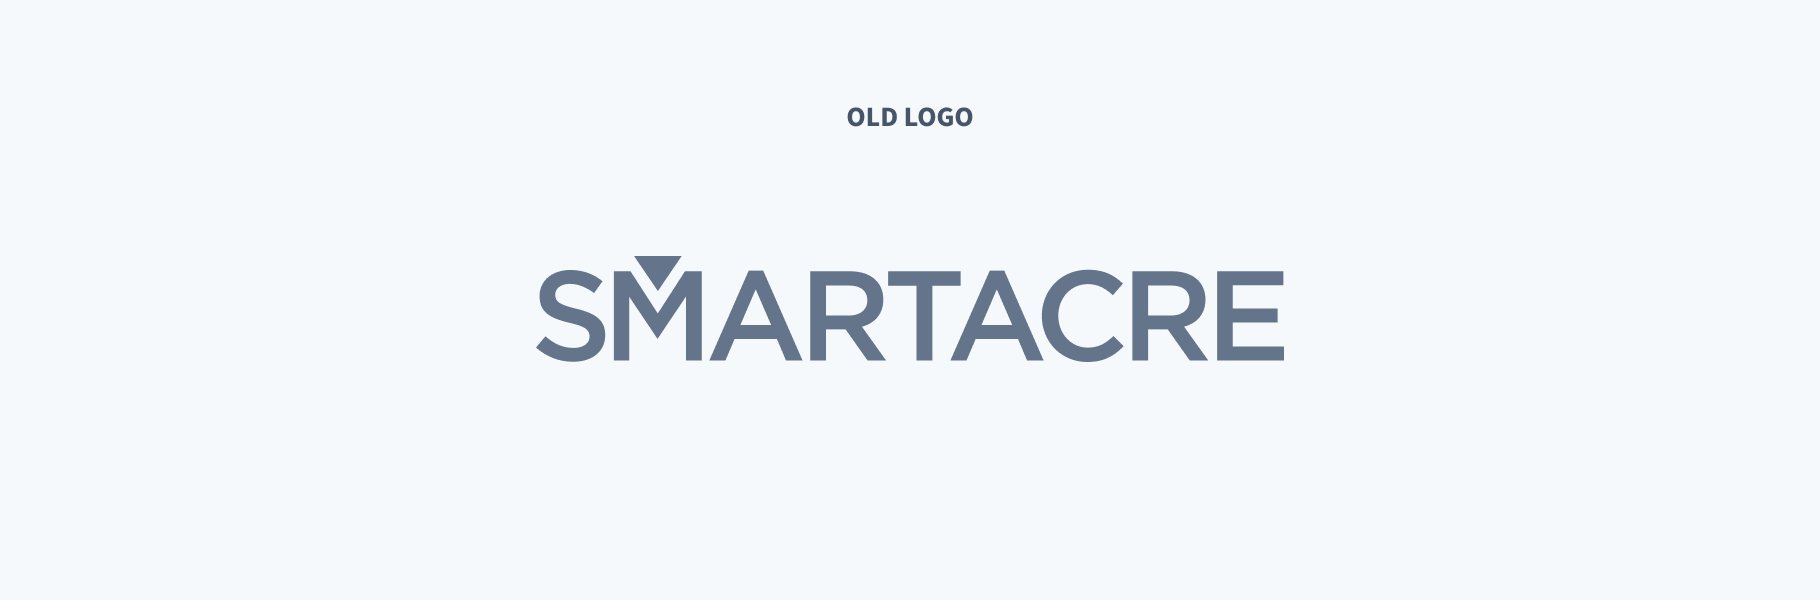 Old SmartAcre Logo